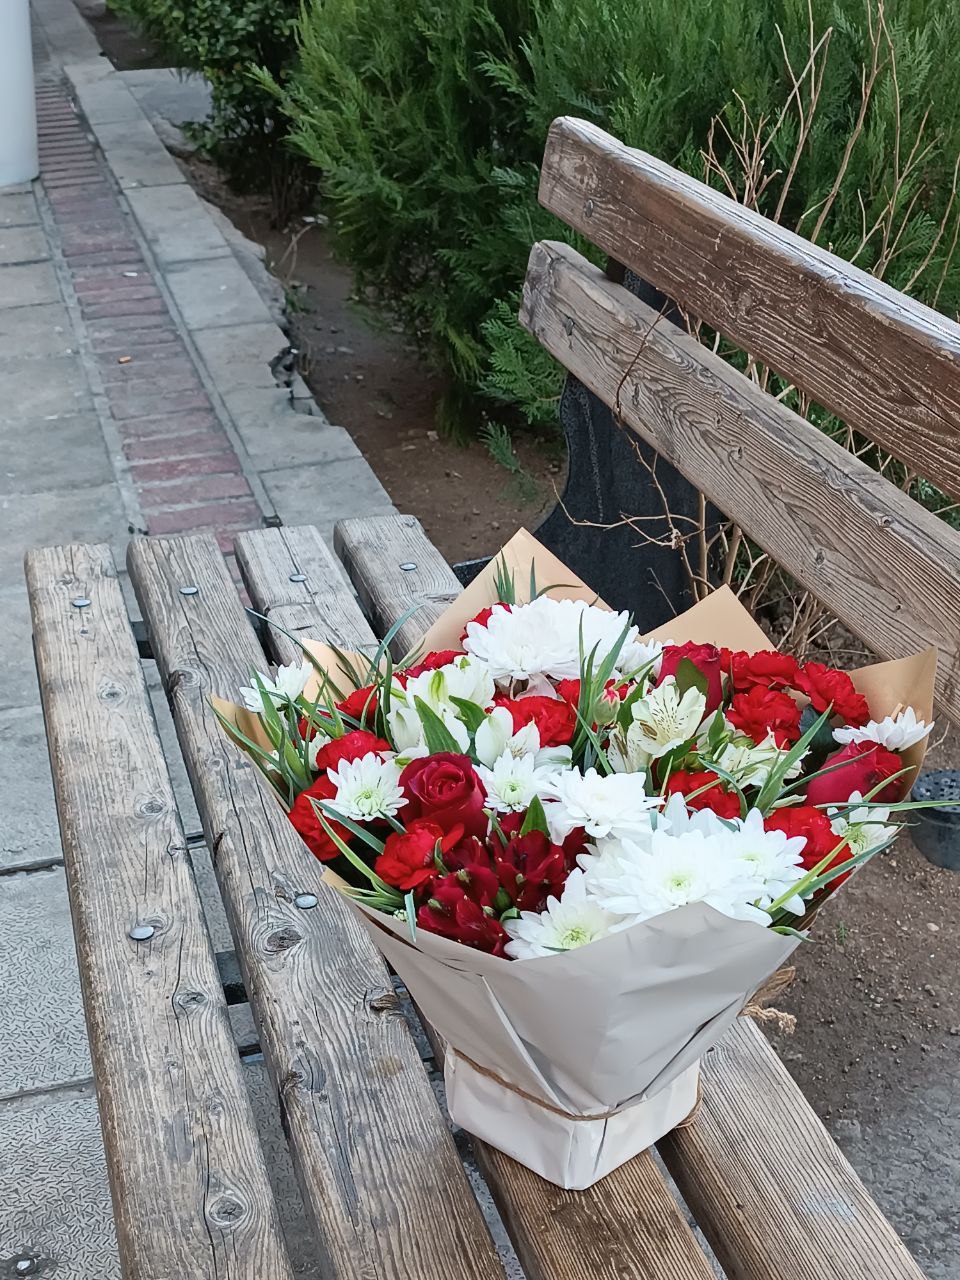 سفارش و خرید آنلاین باکس گل مناسبتی طرح سمیرا از گلفروشی آنلاین شیراز اطلس گل.